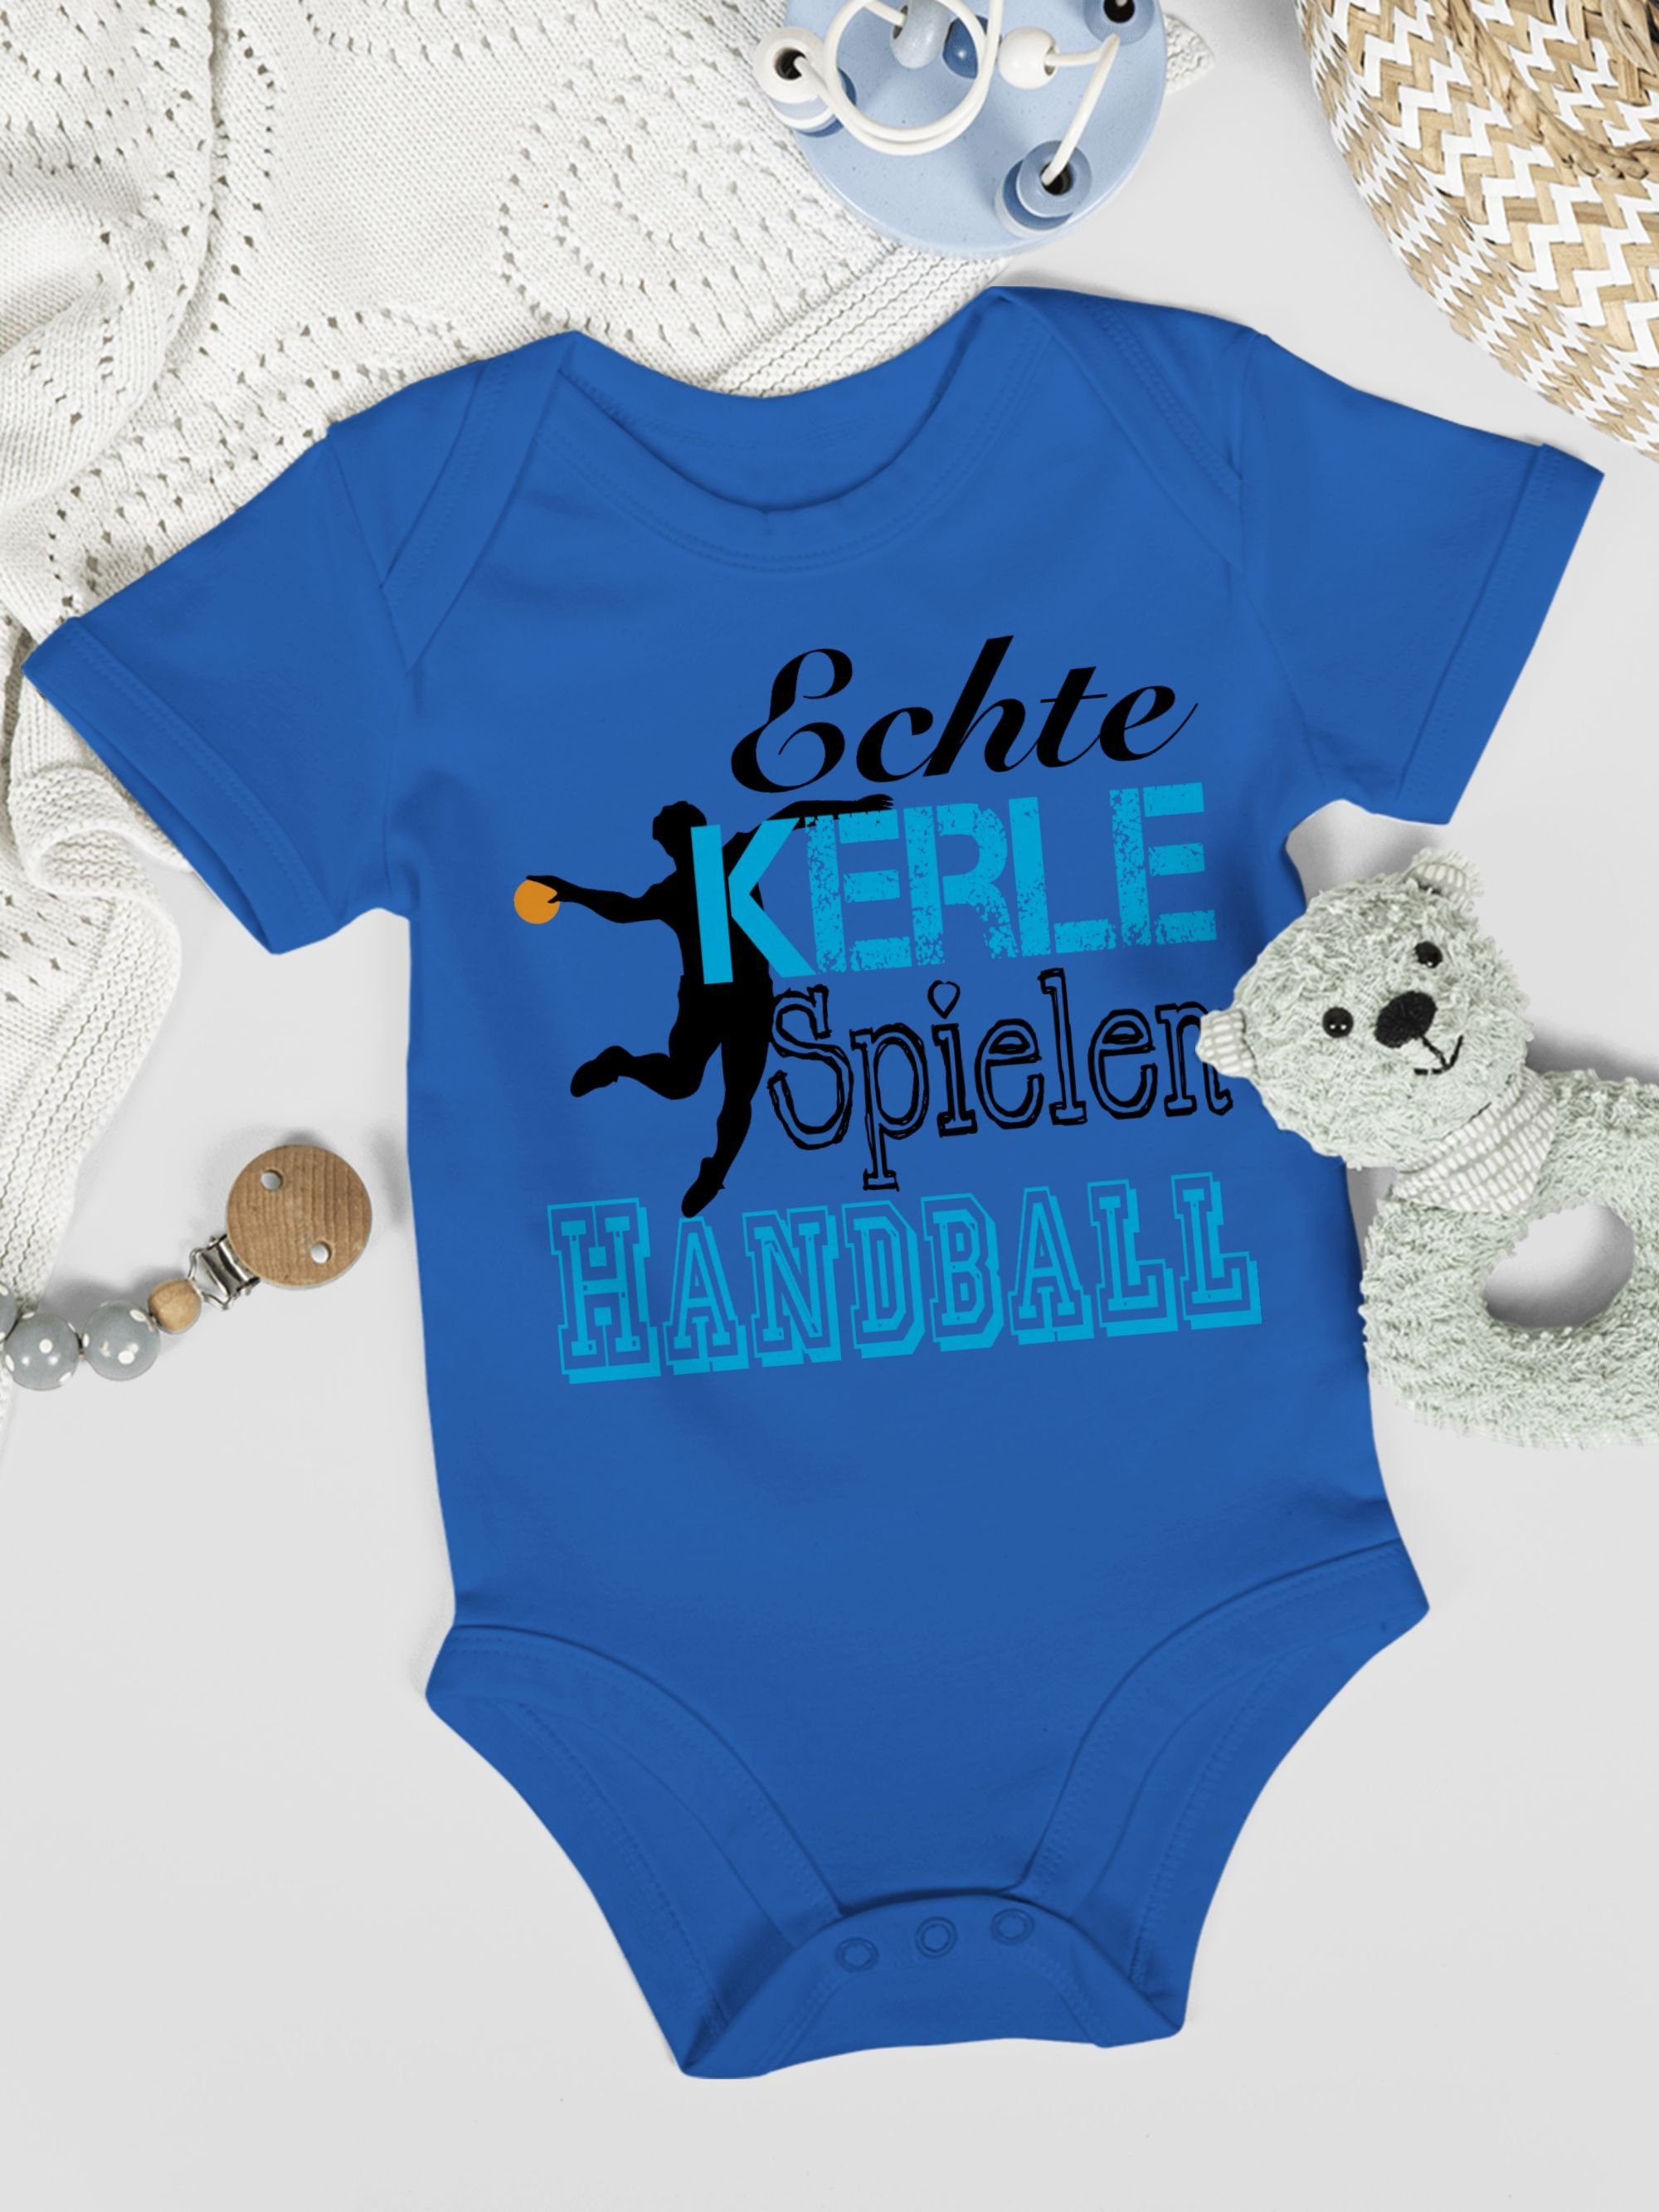 1 Echte Kerle Shirtbody Royalblau & Shirtracer Baby Sport Bewegung Spielen Handball